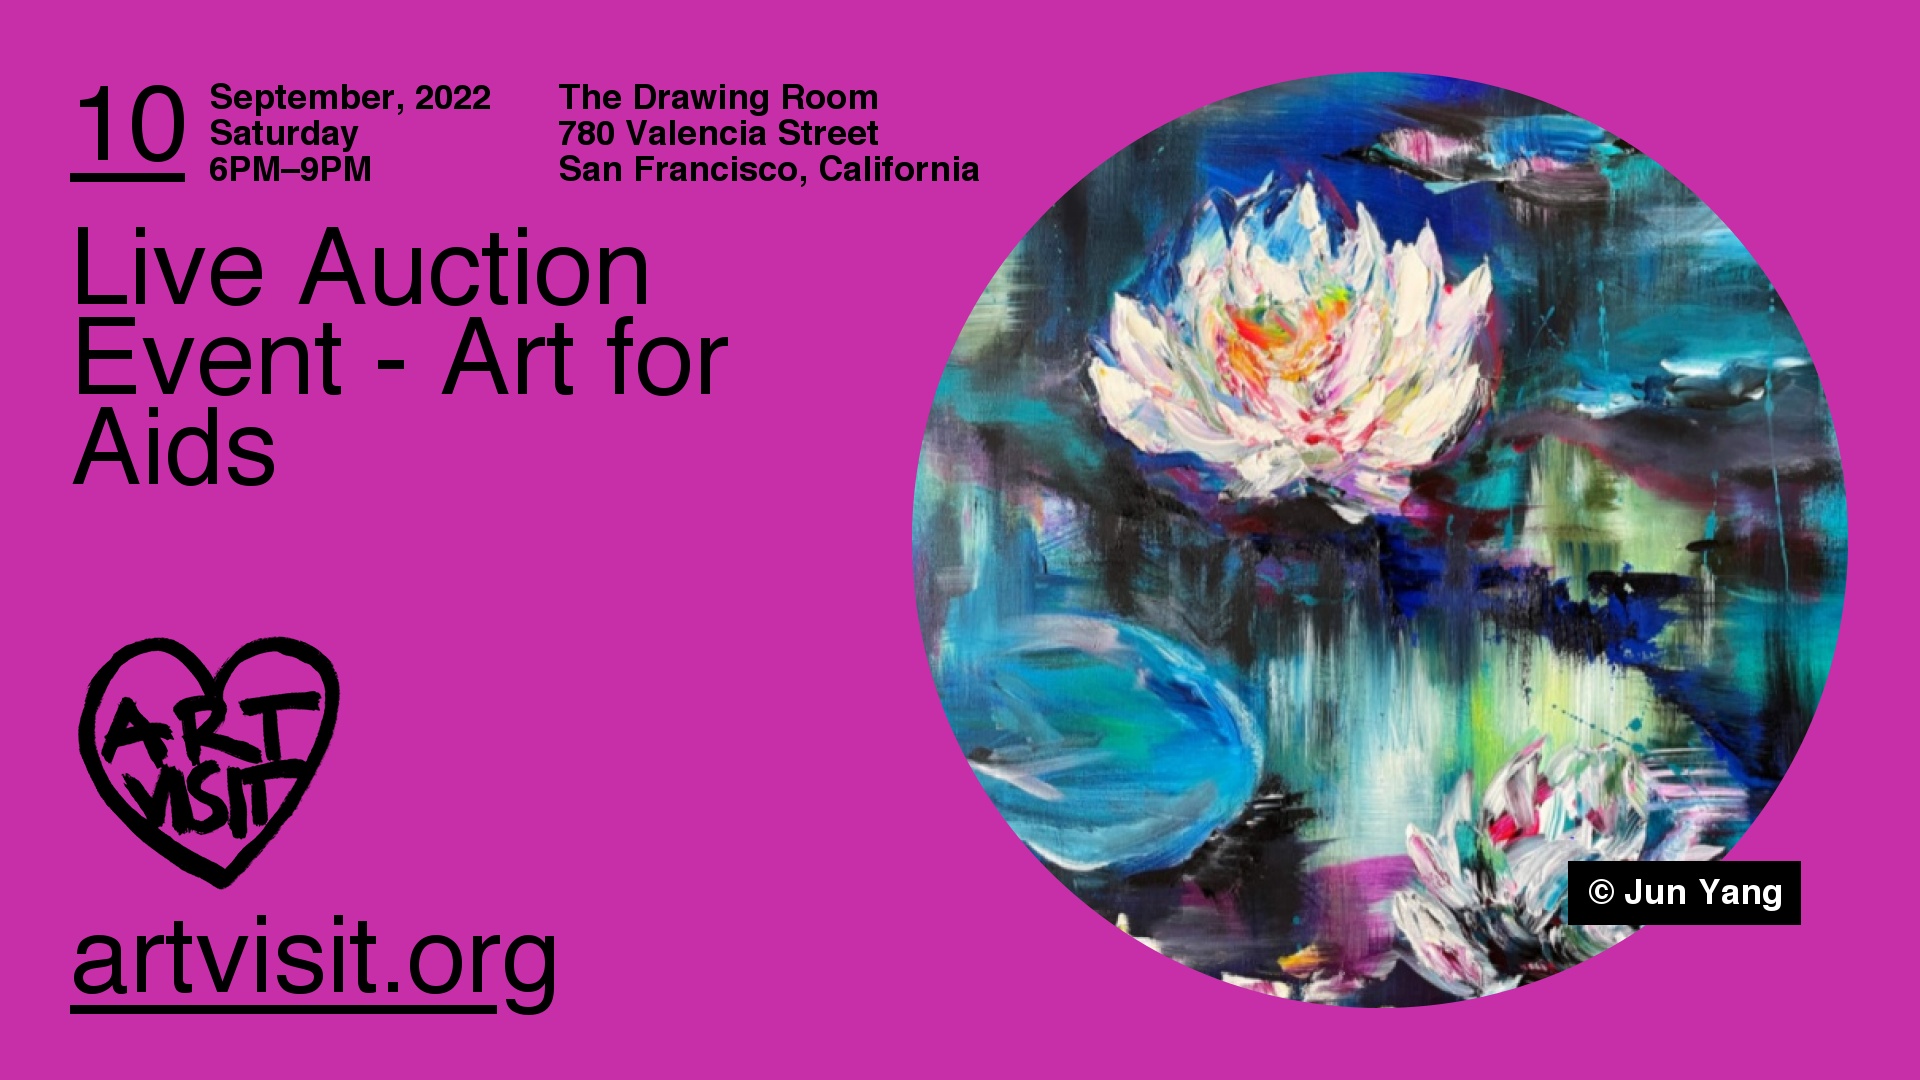 Live Auction Event - Art for Aids